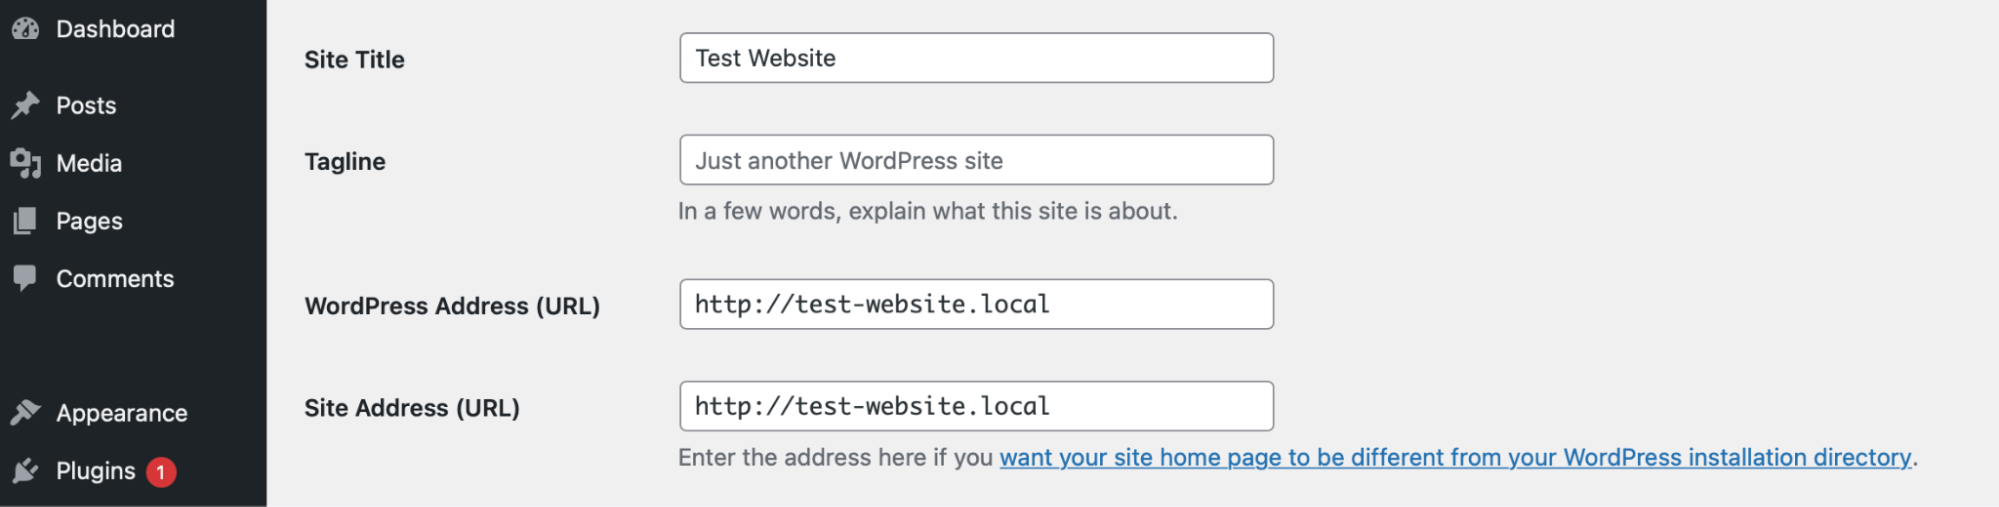 panonun içindeki WordPress ve site adreslerini güncelleme